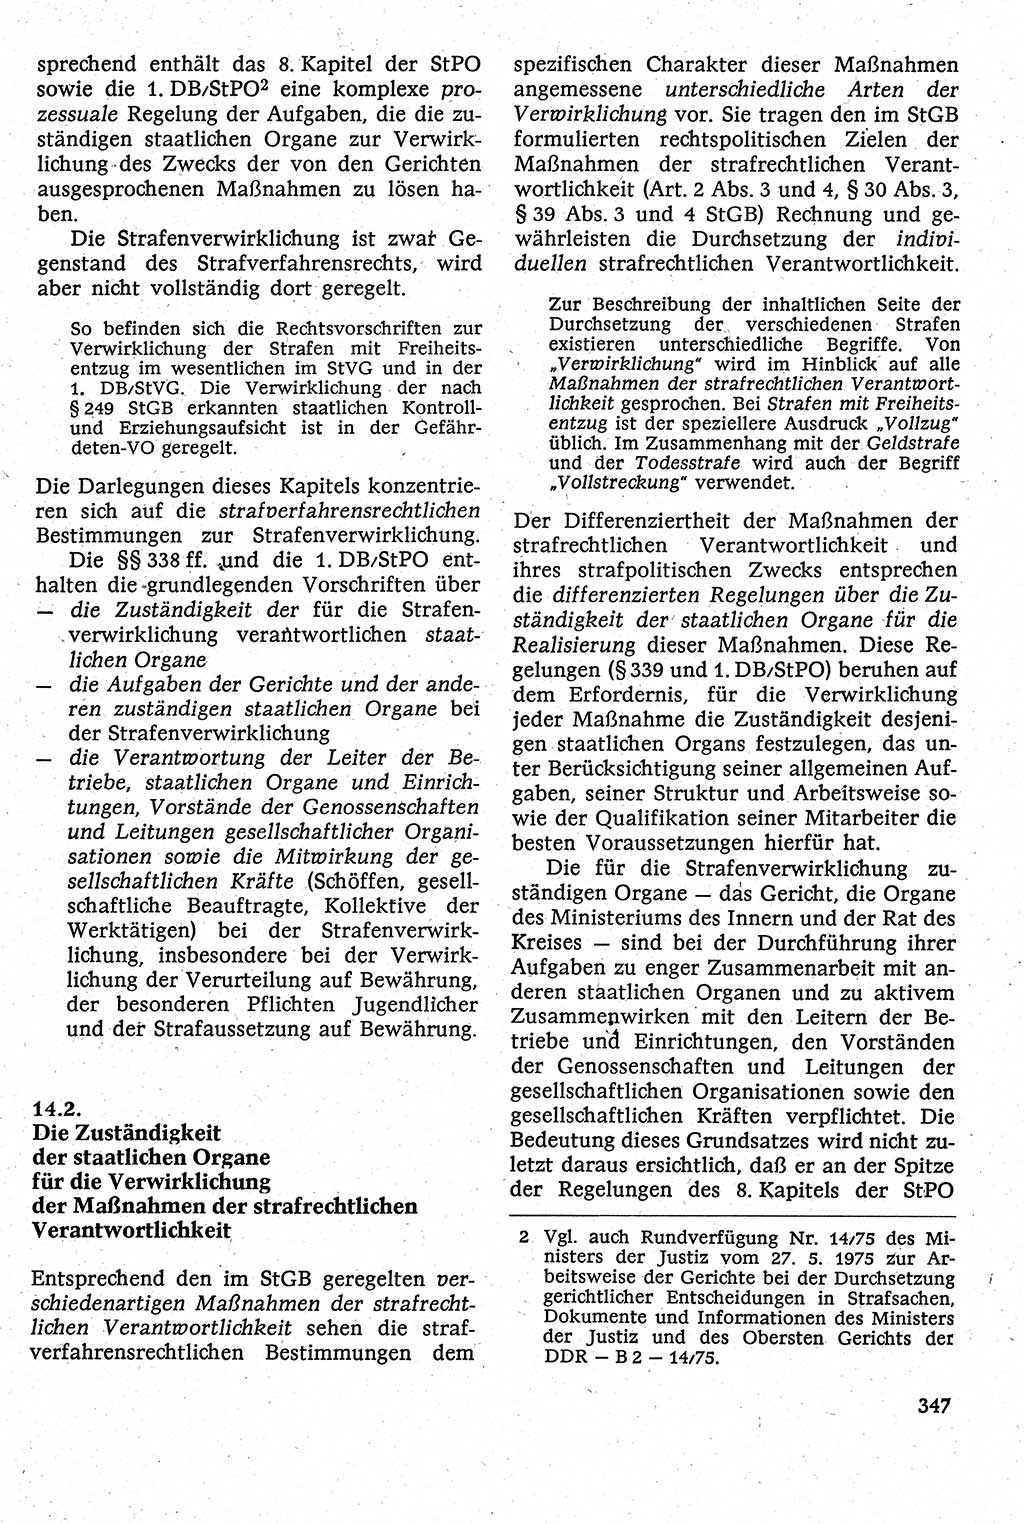 Strafverfahrensrecht [Deutsche Demokratische Republik (DDR)], Lehrbuch 1982, Seite 347 (Strafverf.-R. DDR Lb. 1982, S. 347)